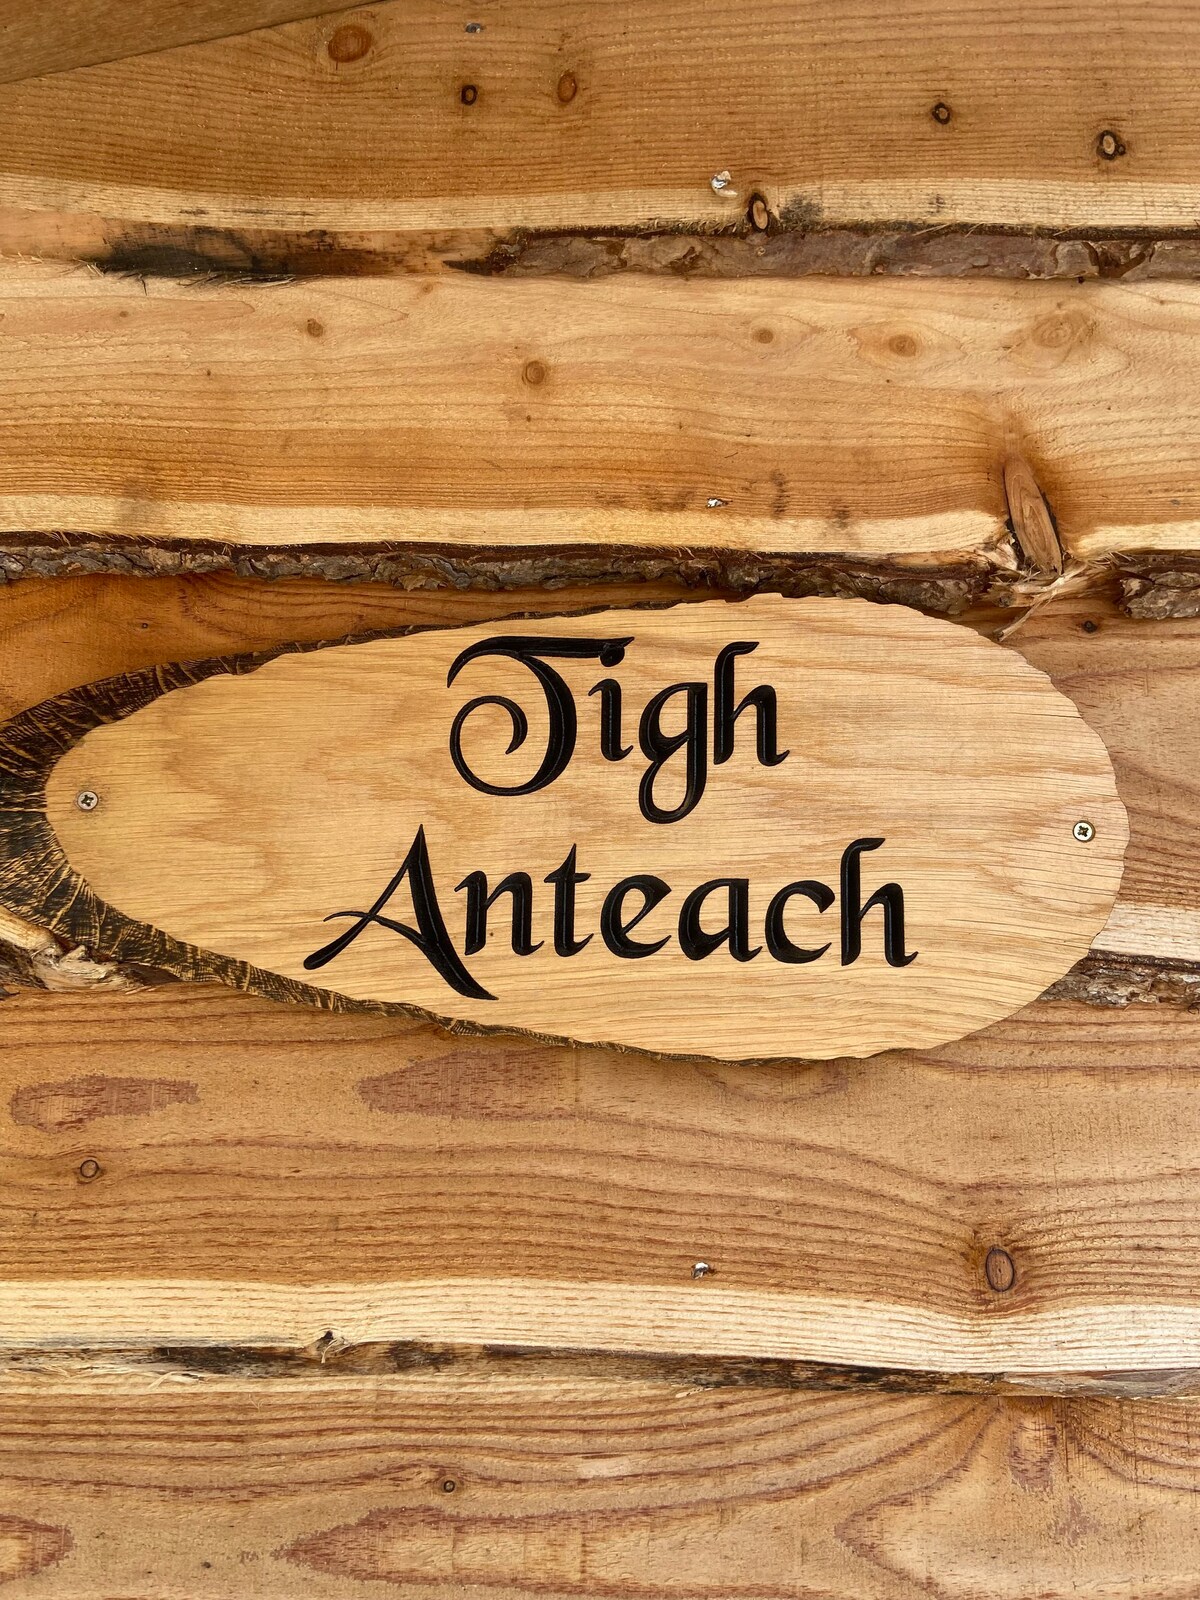 Tigh Anteach